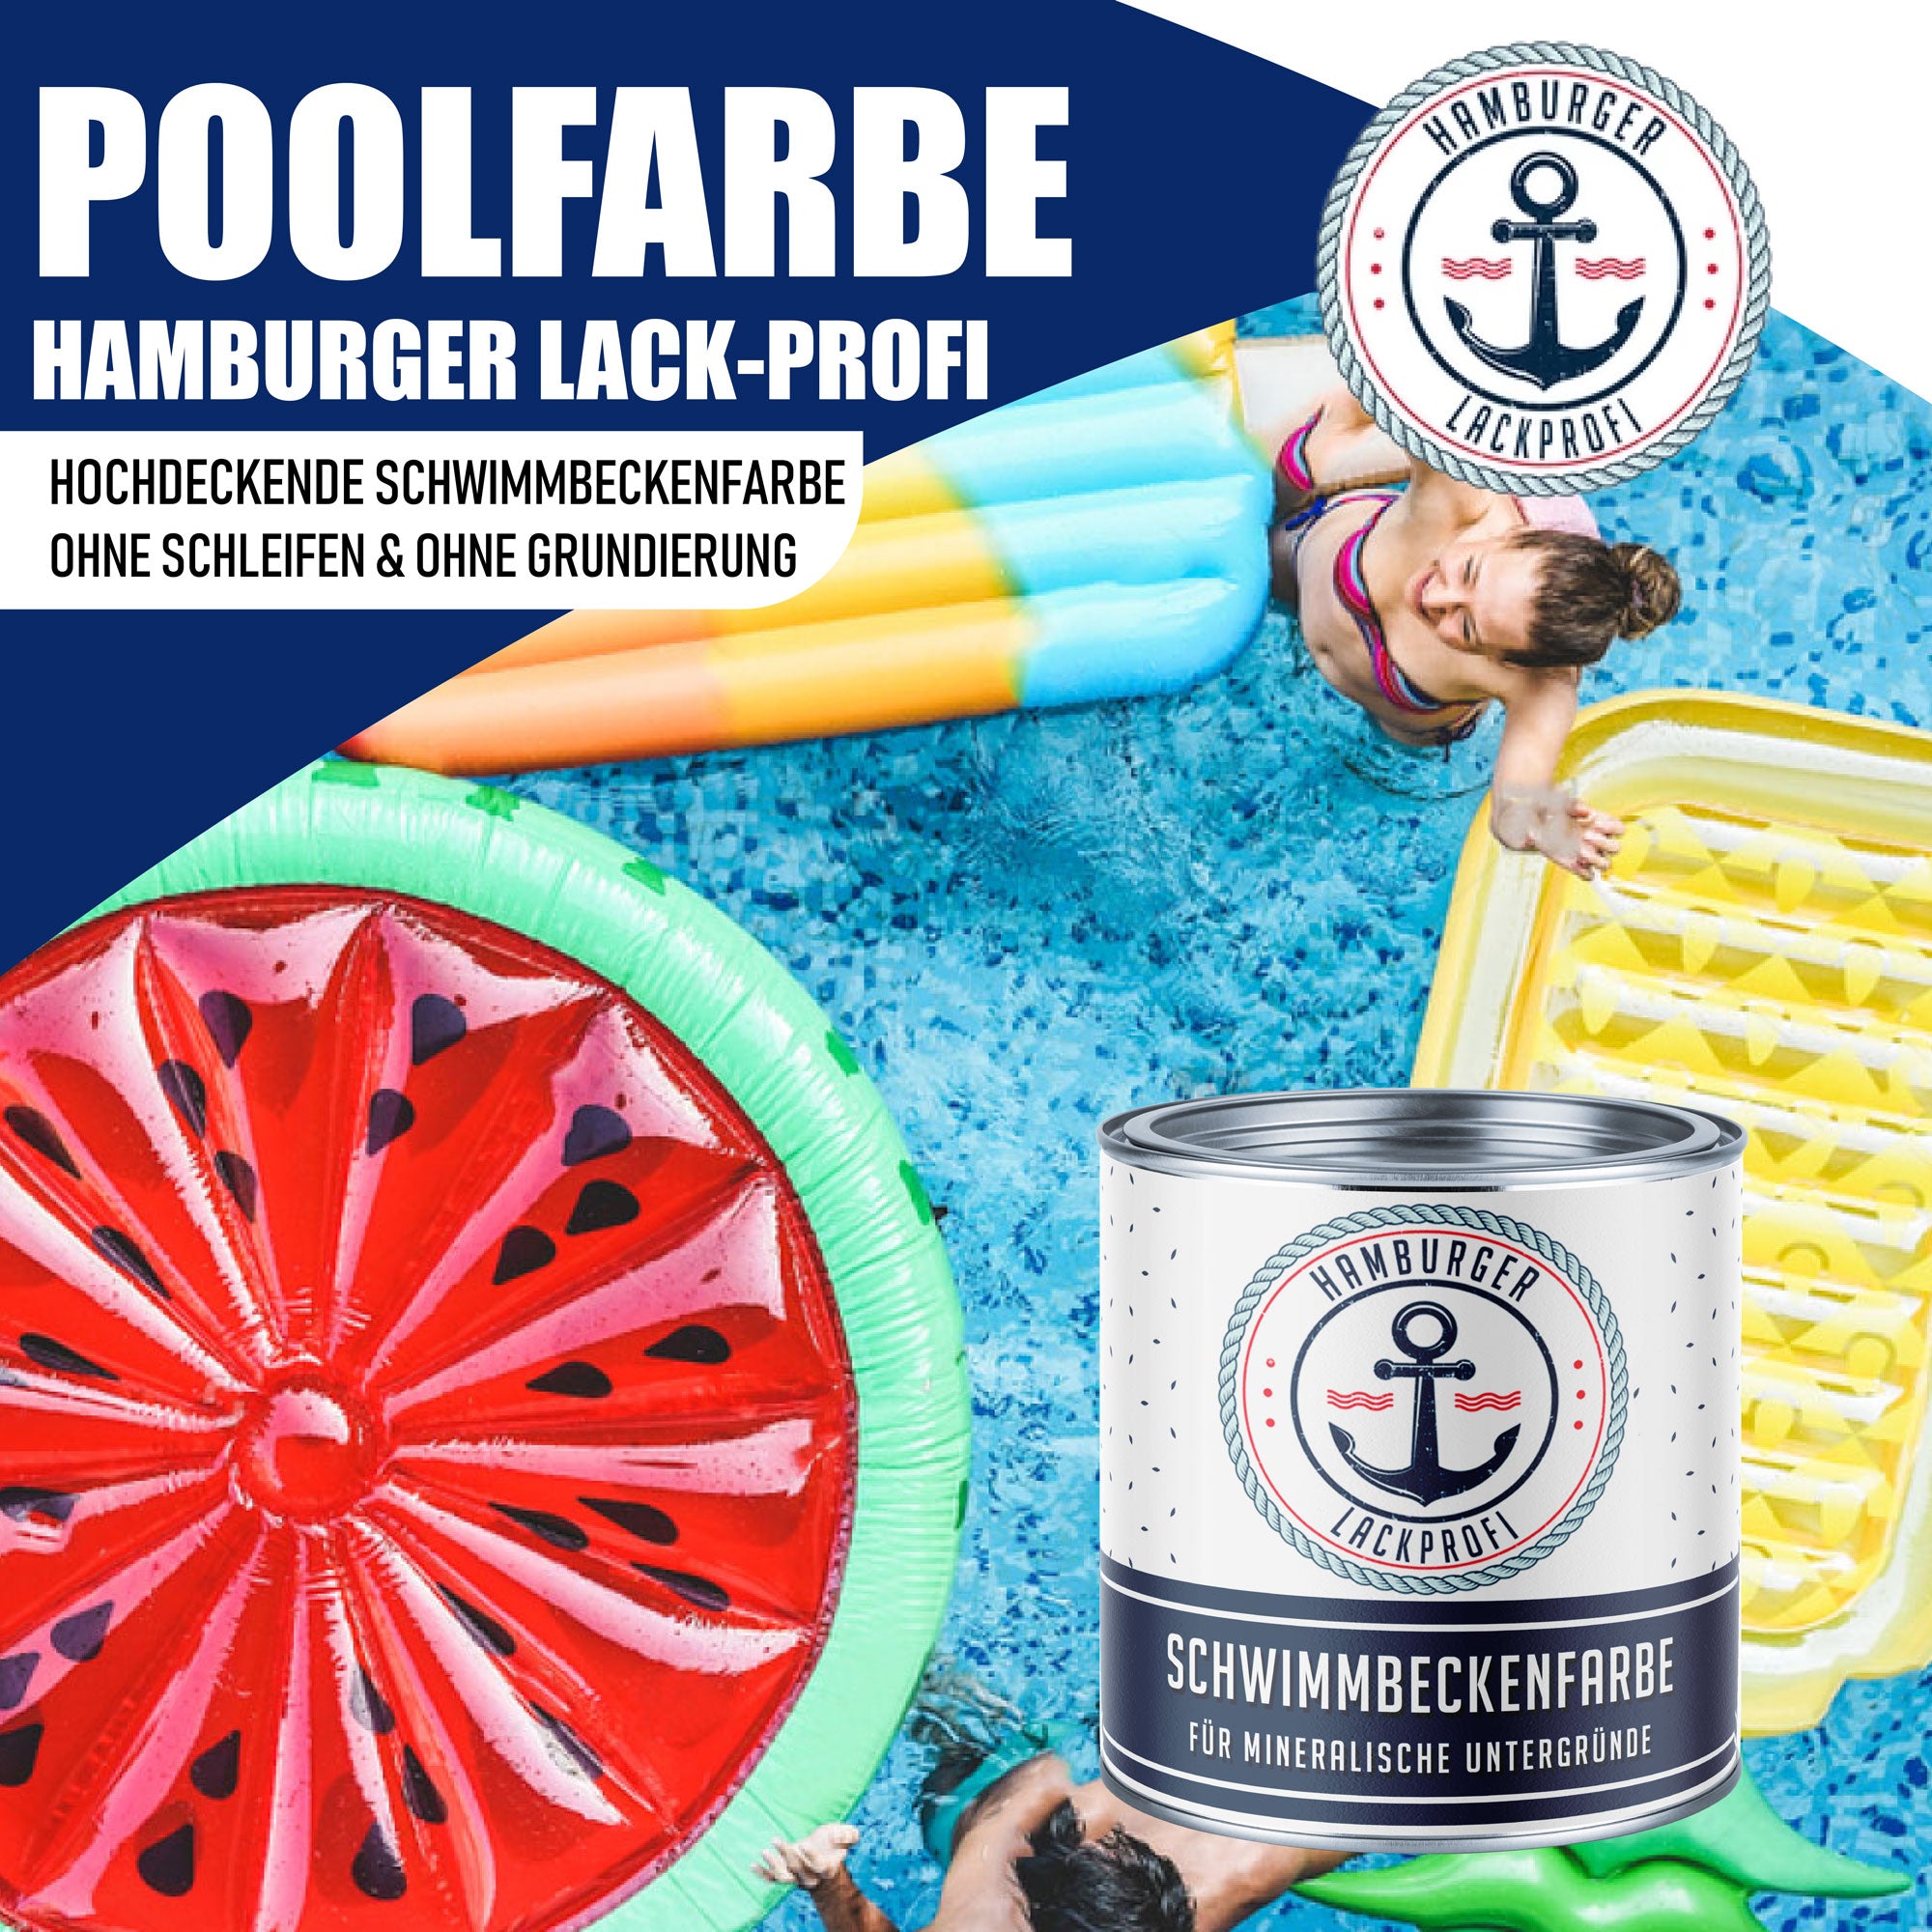 Hamburger Lack-Profi Schwimmbeckenfarbe Blaßgrün RAL 6021 - hochdeckende Poolfarbe